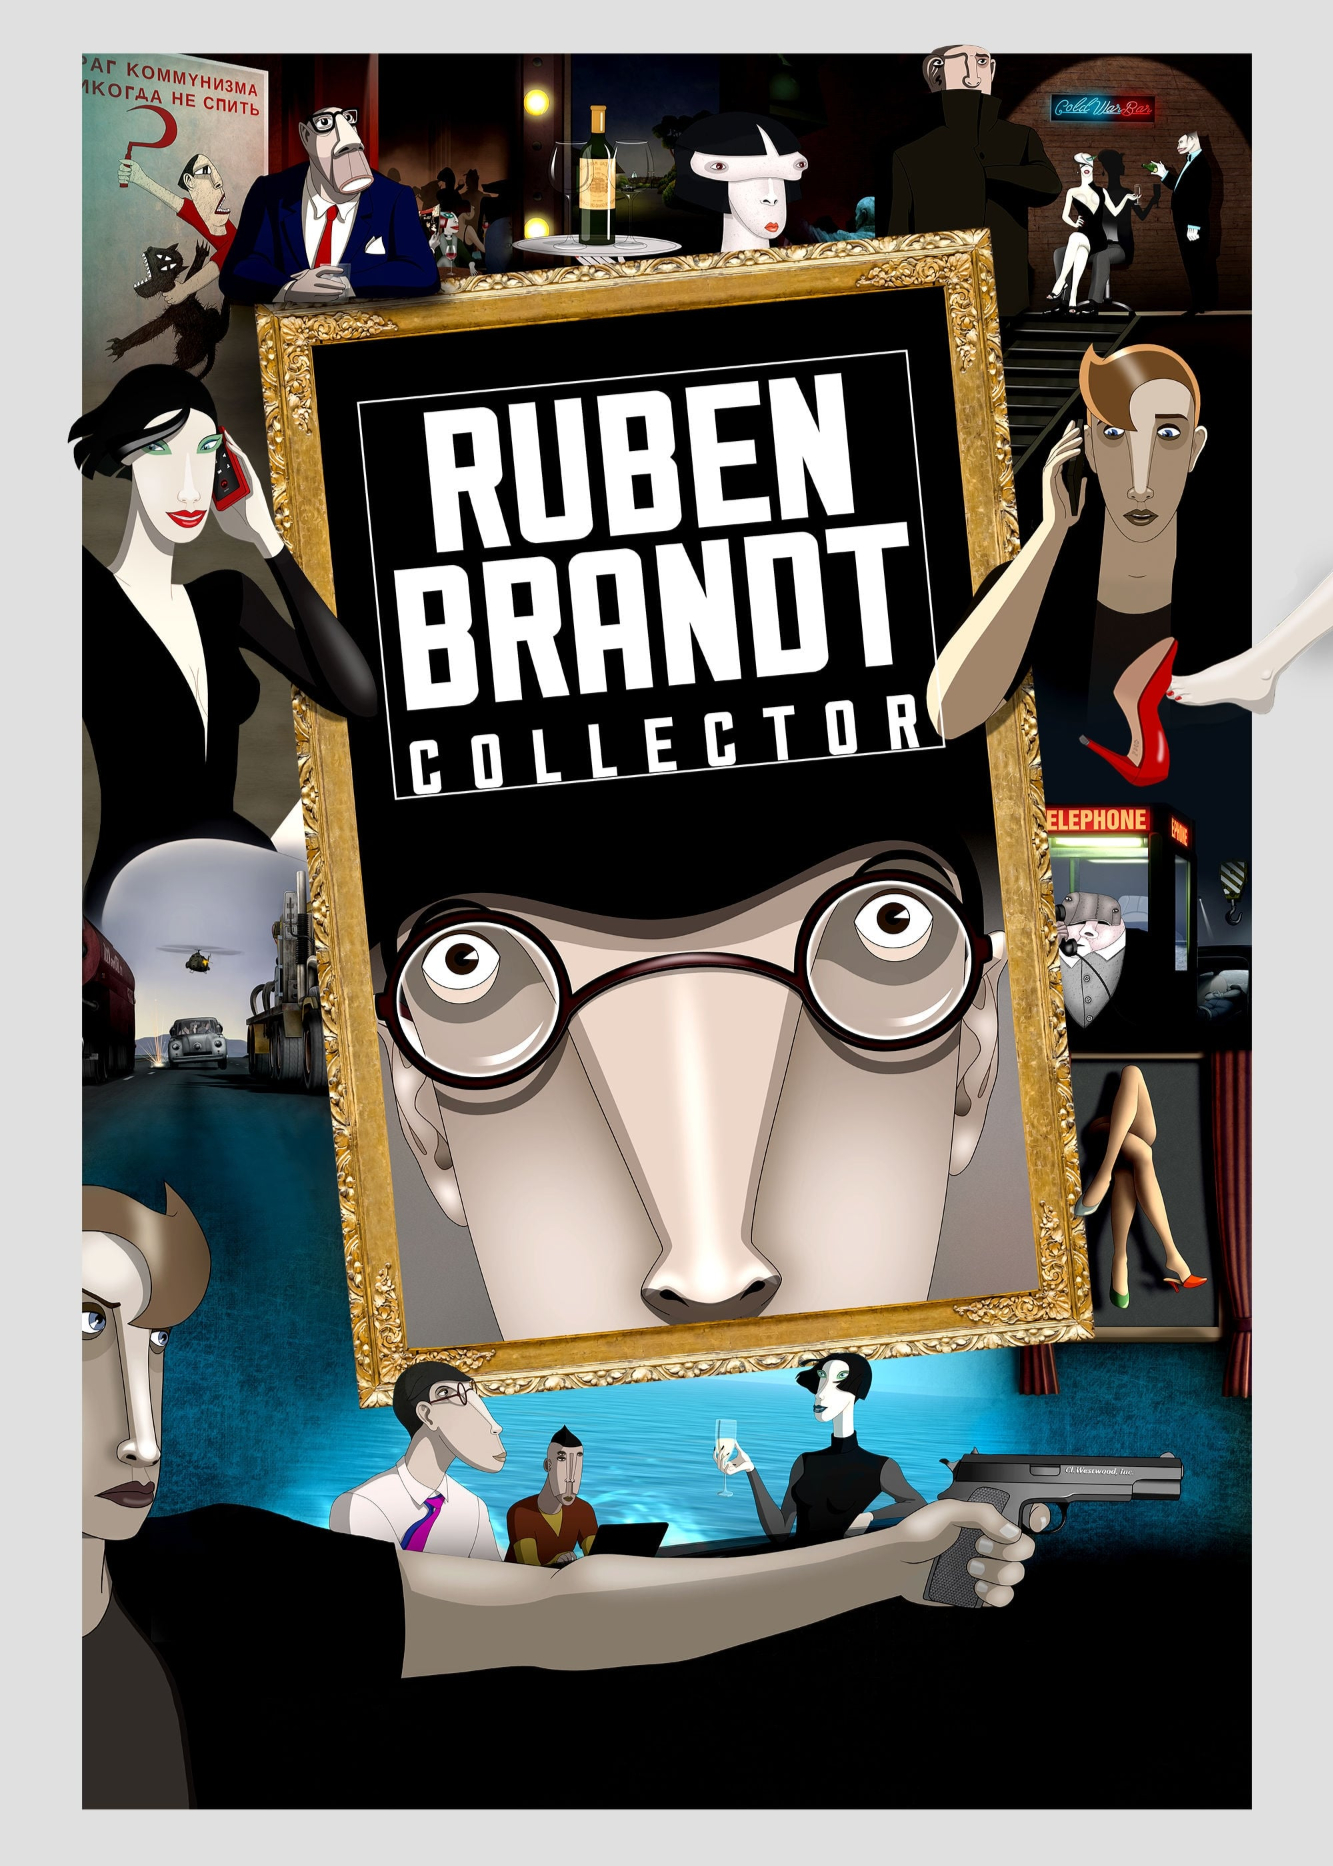 Ruben Brandt, Collector - Ruben Brandt, Collector